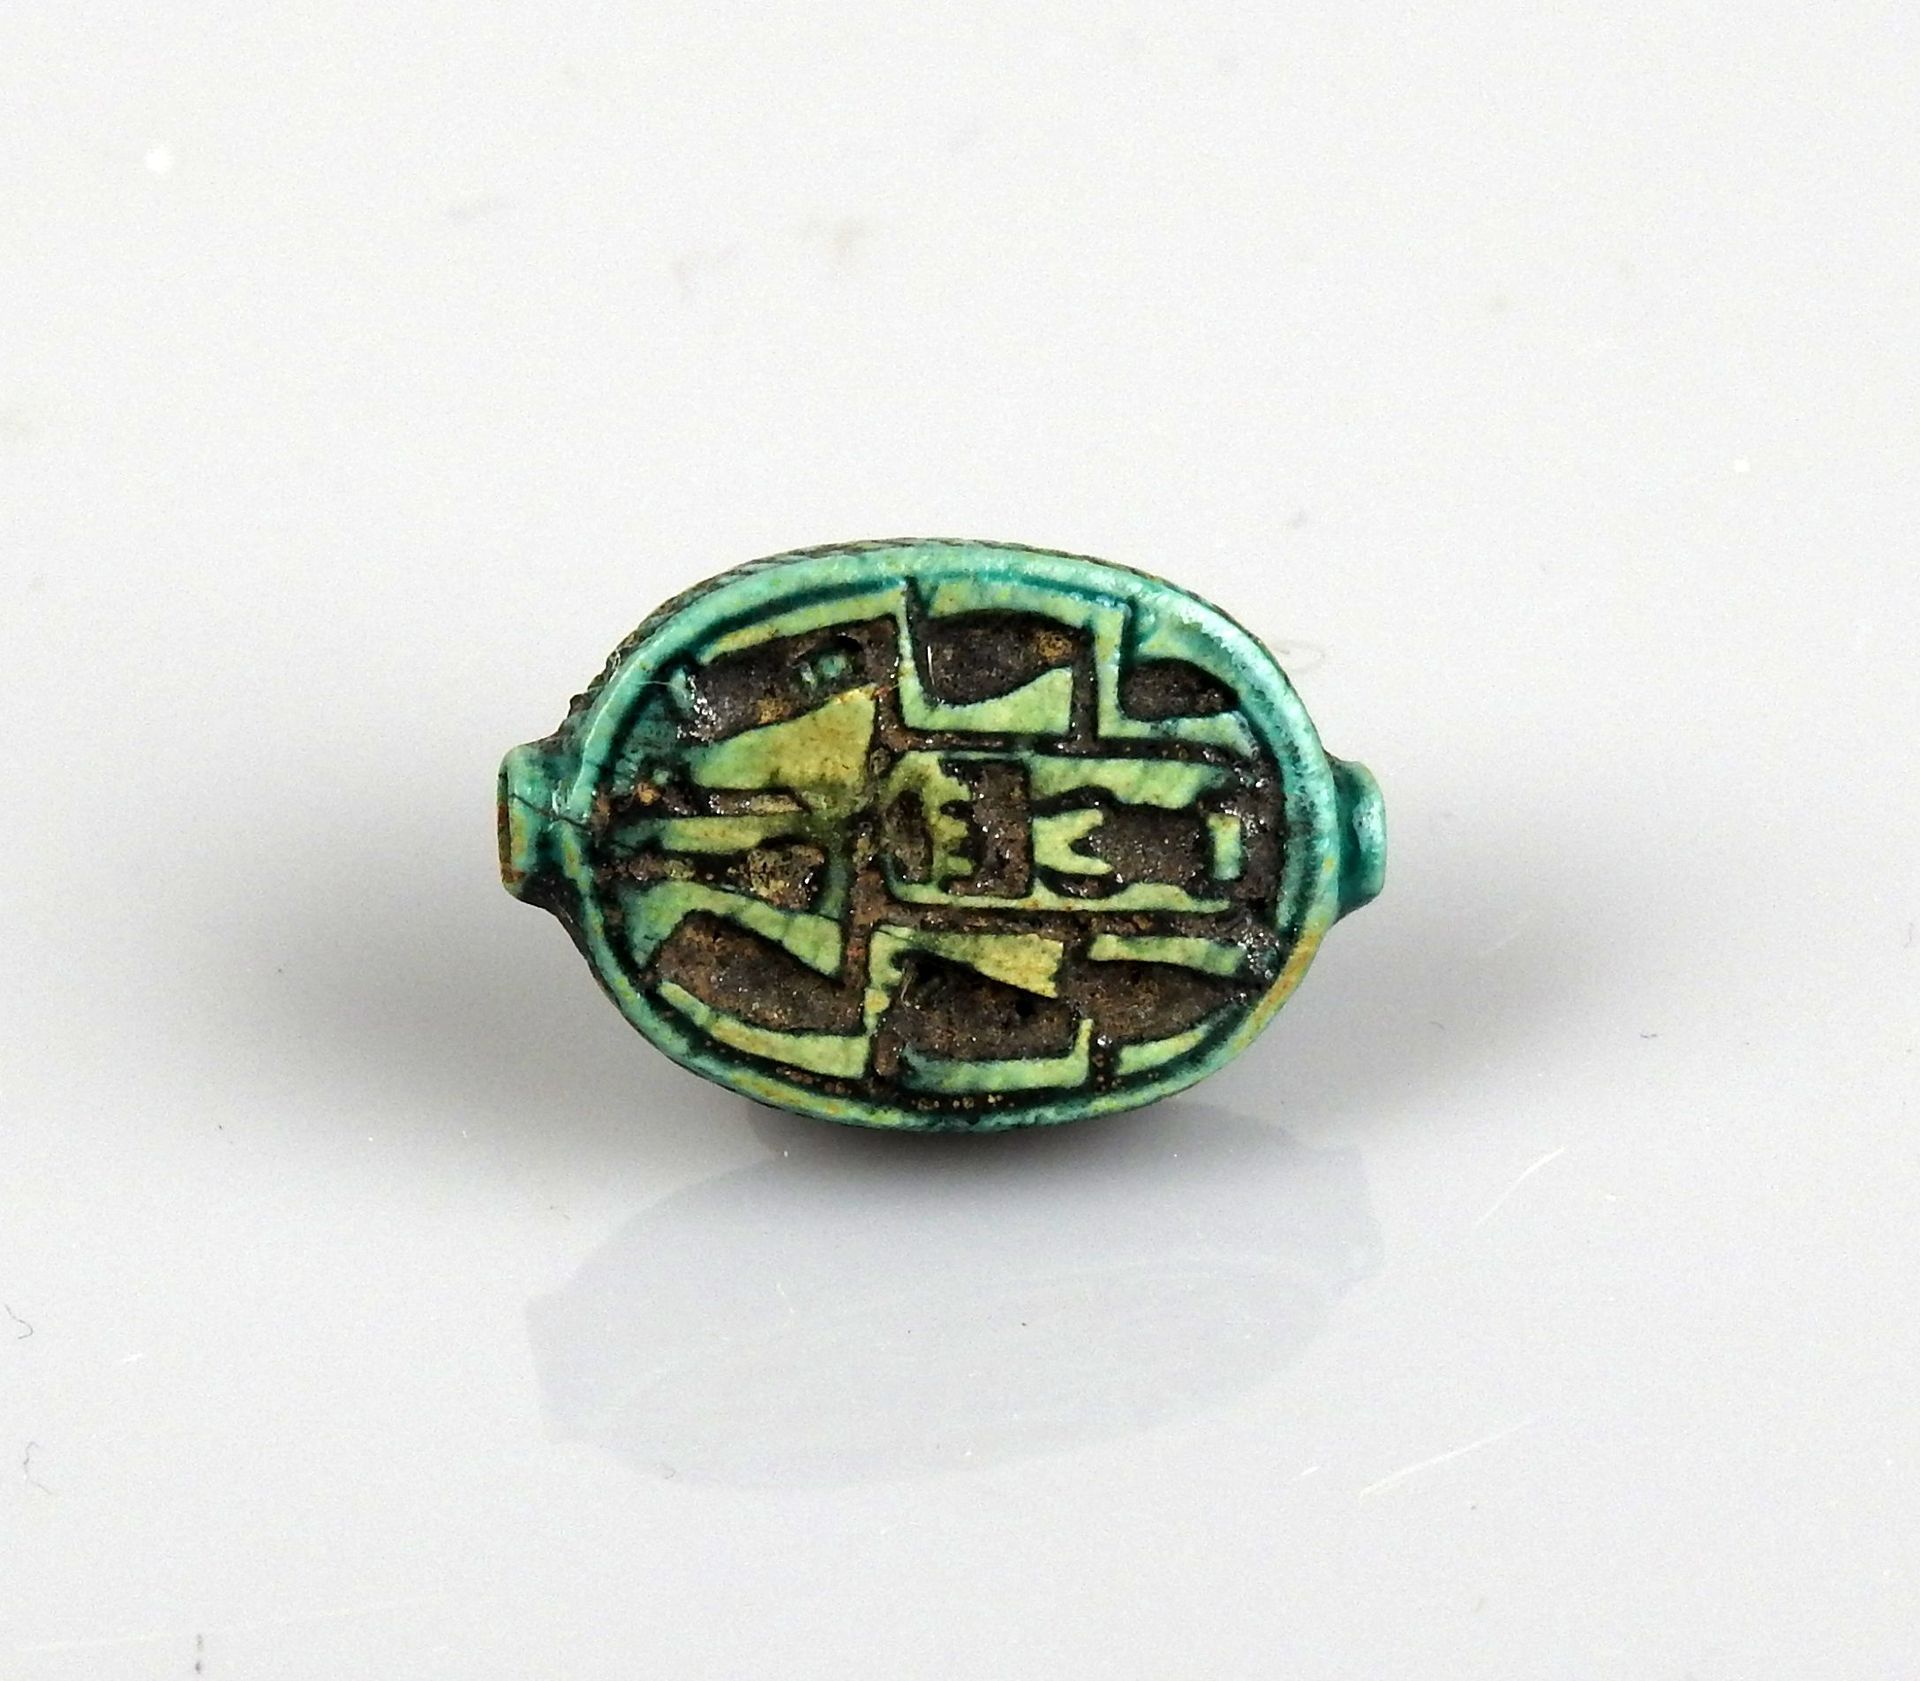 Null 饰有象形文字和刻痕的椭圆形珠子

熔块2厘米

埃及晚期二十六至三十王朝